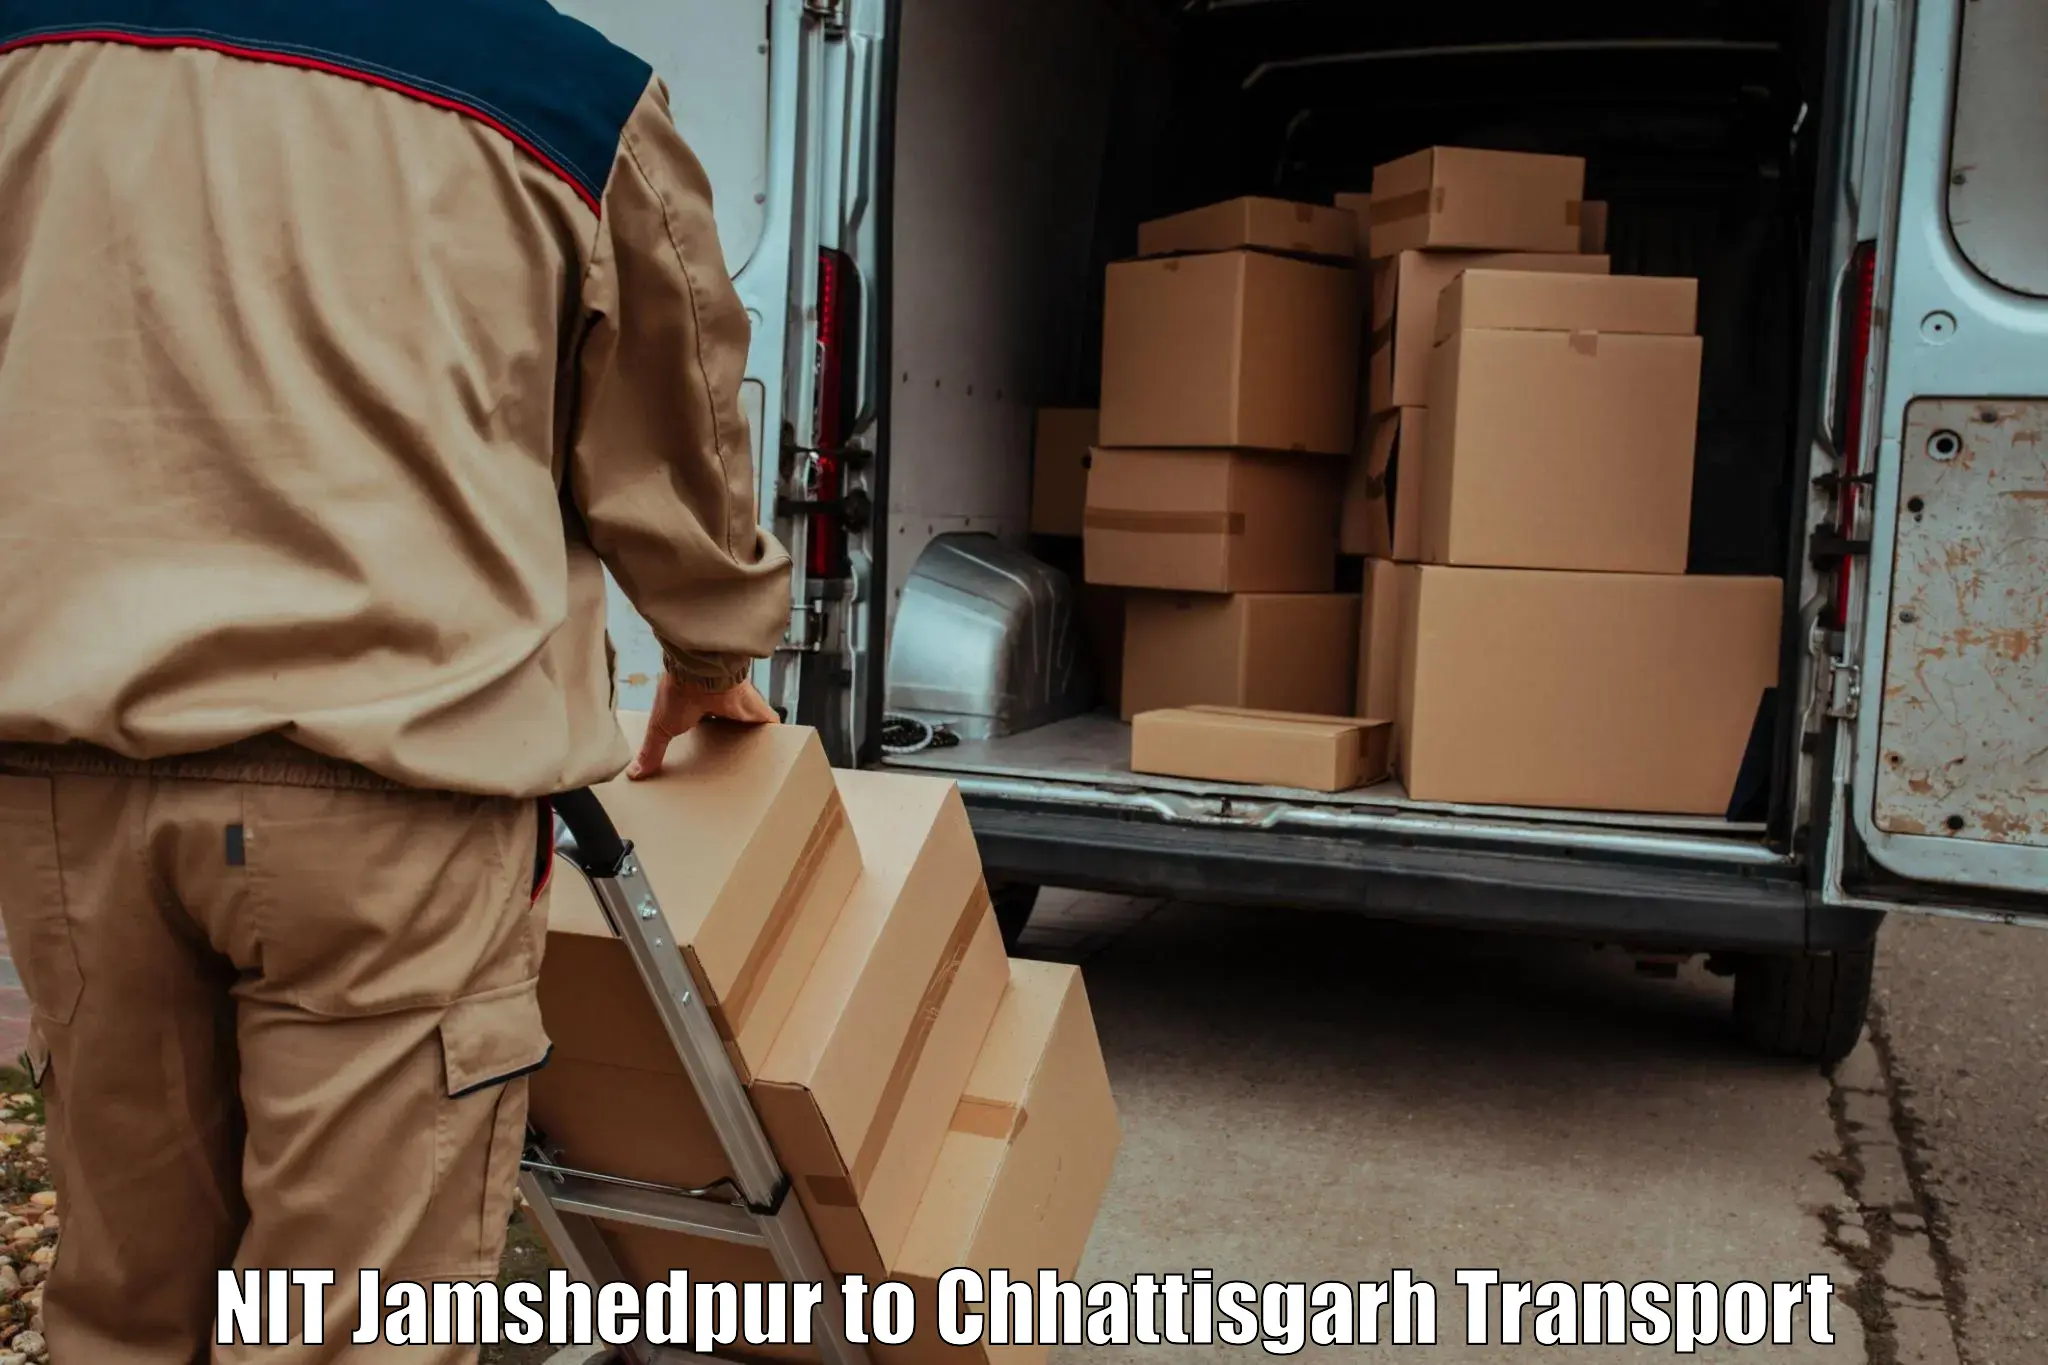 Lorry transport service NIT Jamshedpur to Ramanujganj